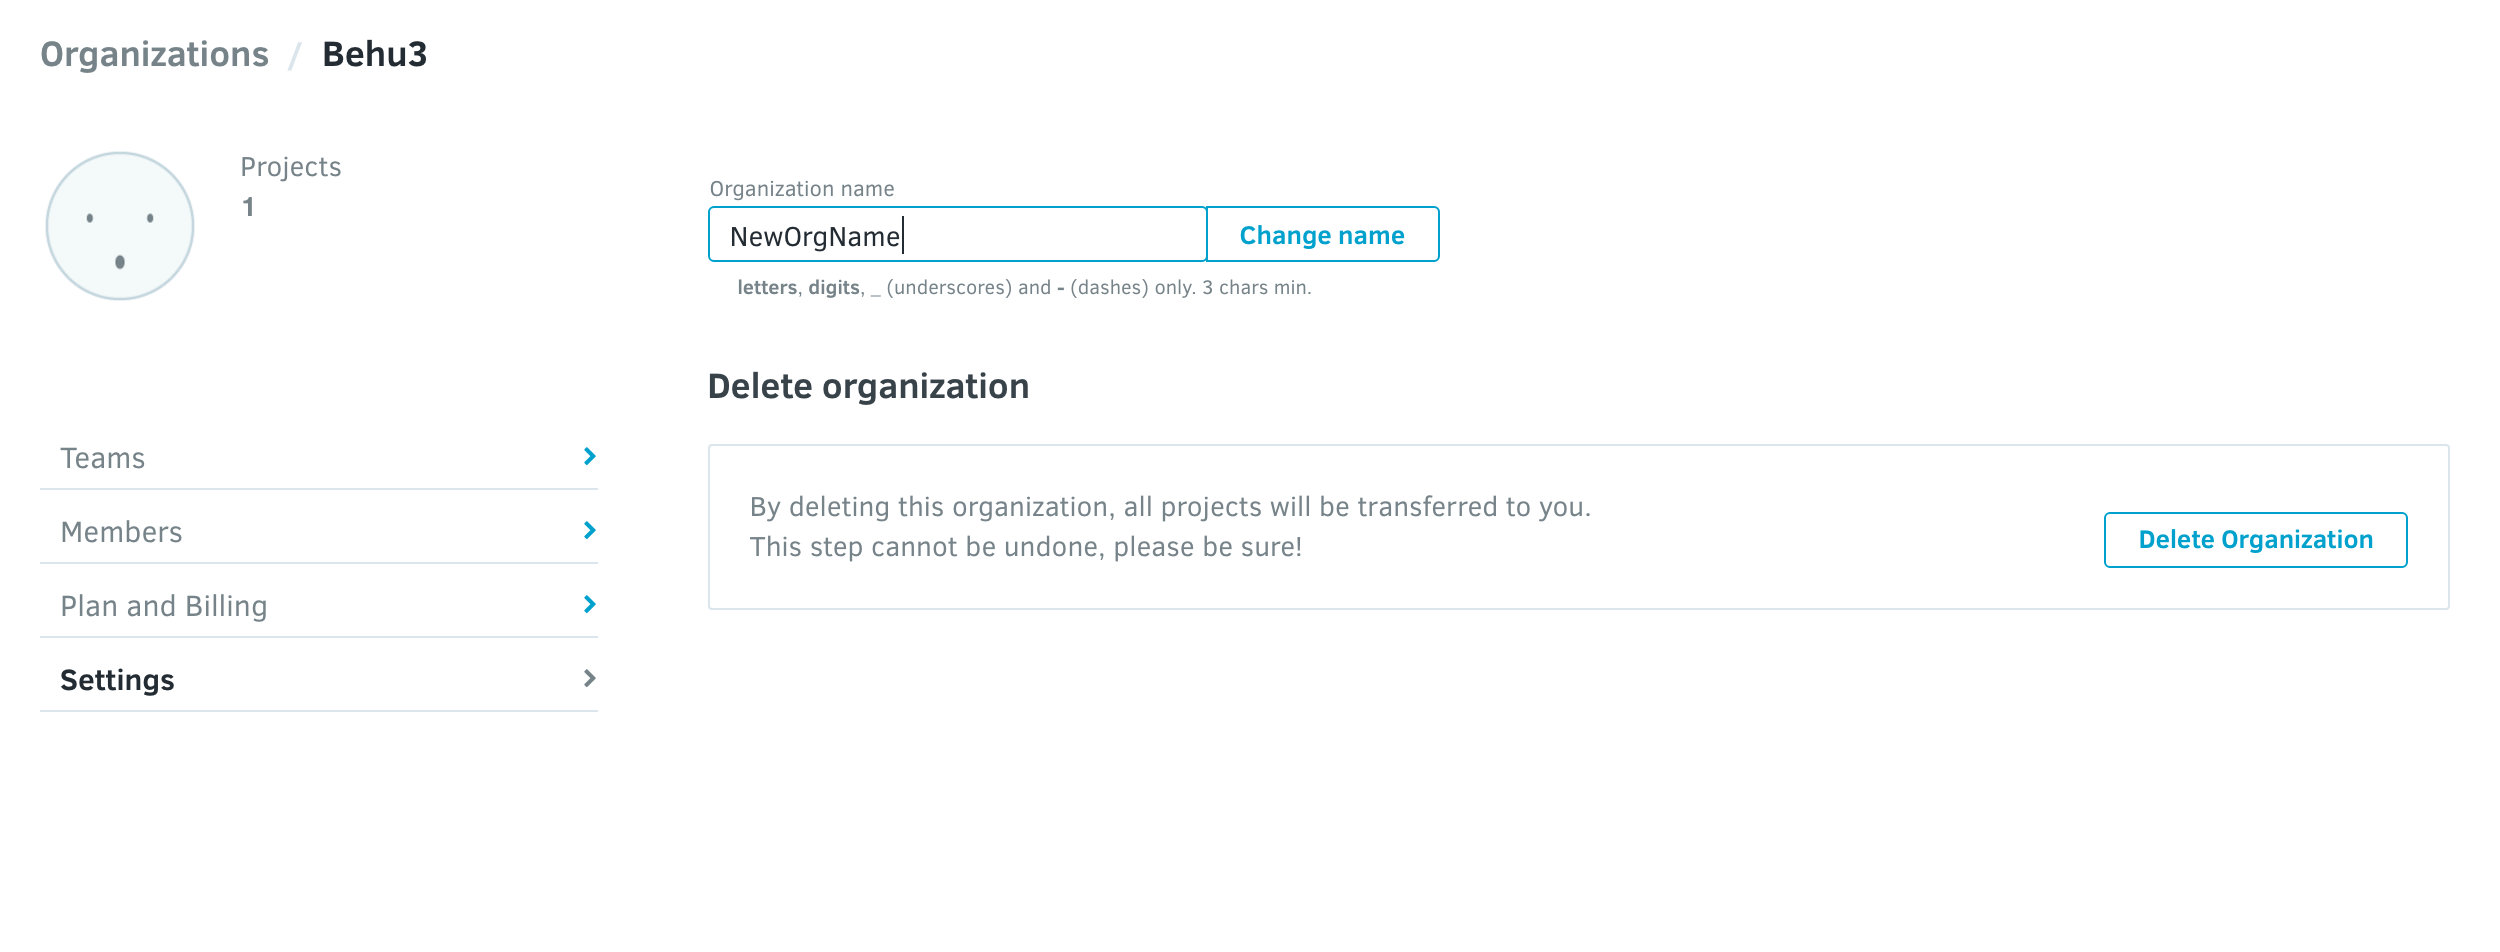 Renaming an organization